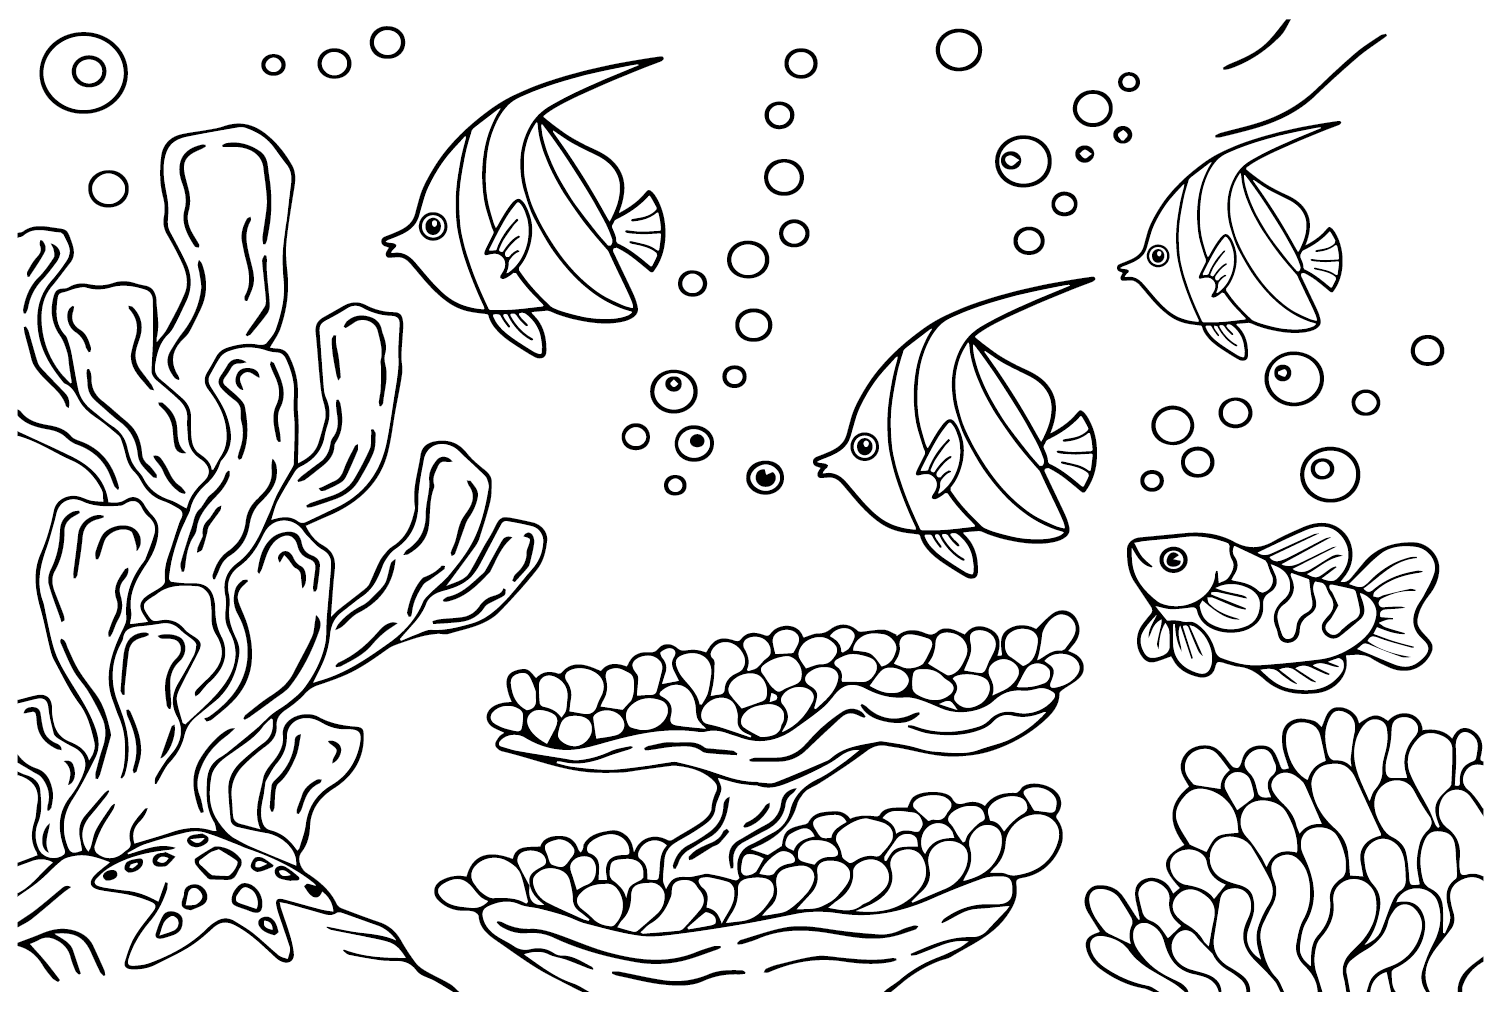 三角旗珊瑚鱼可从三角旗珊瑚鱼打印